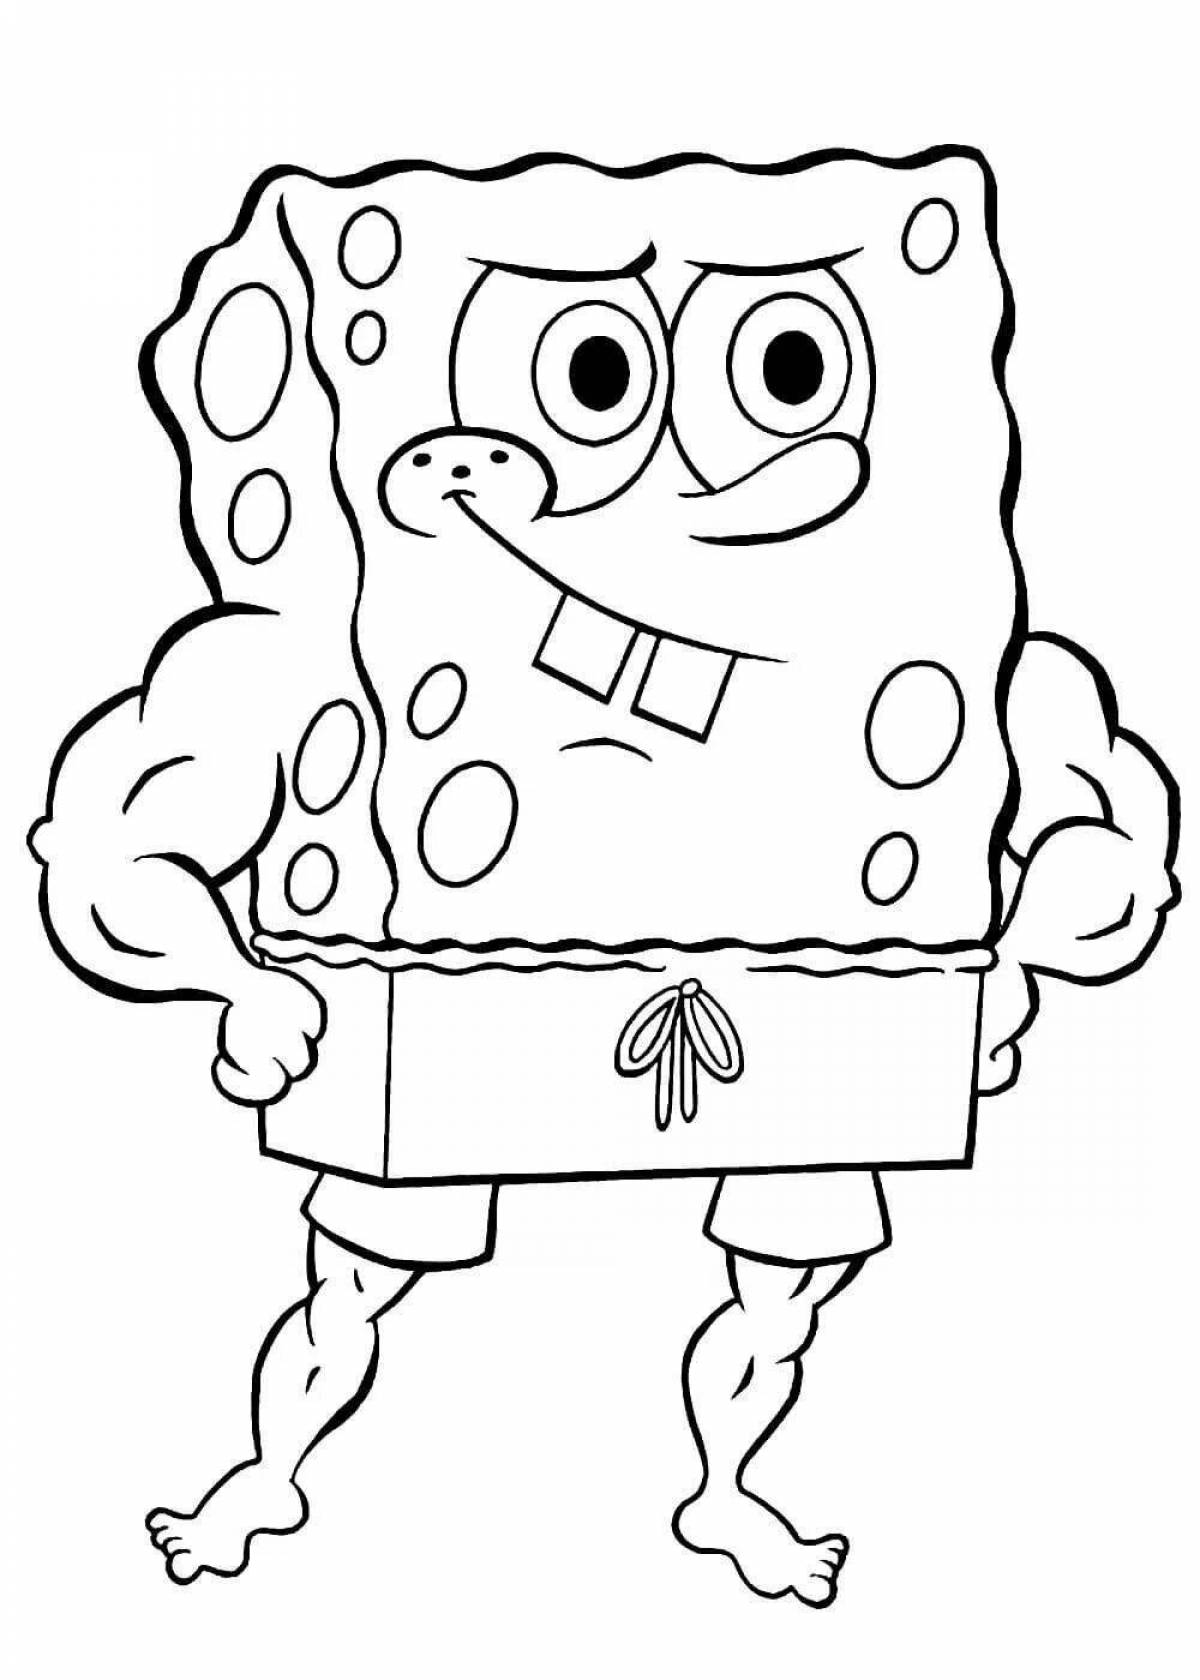 Fun coloring spongebob print